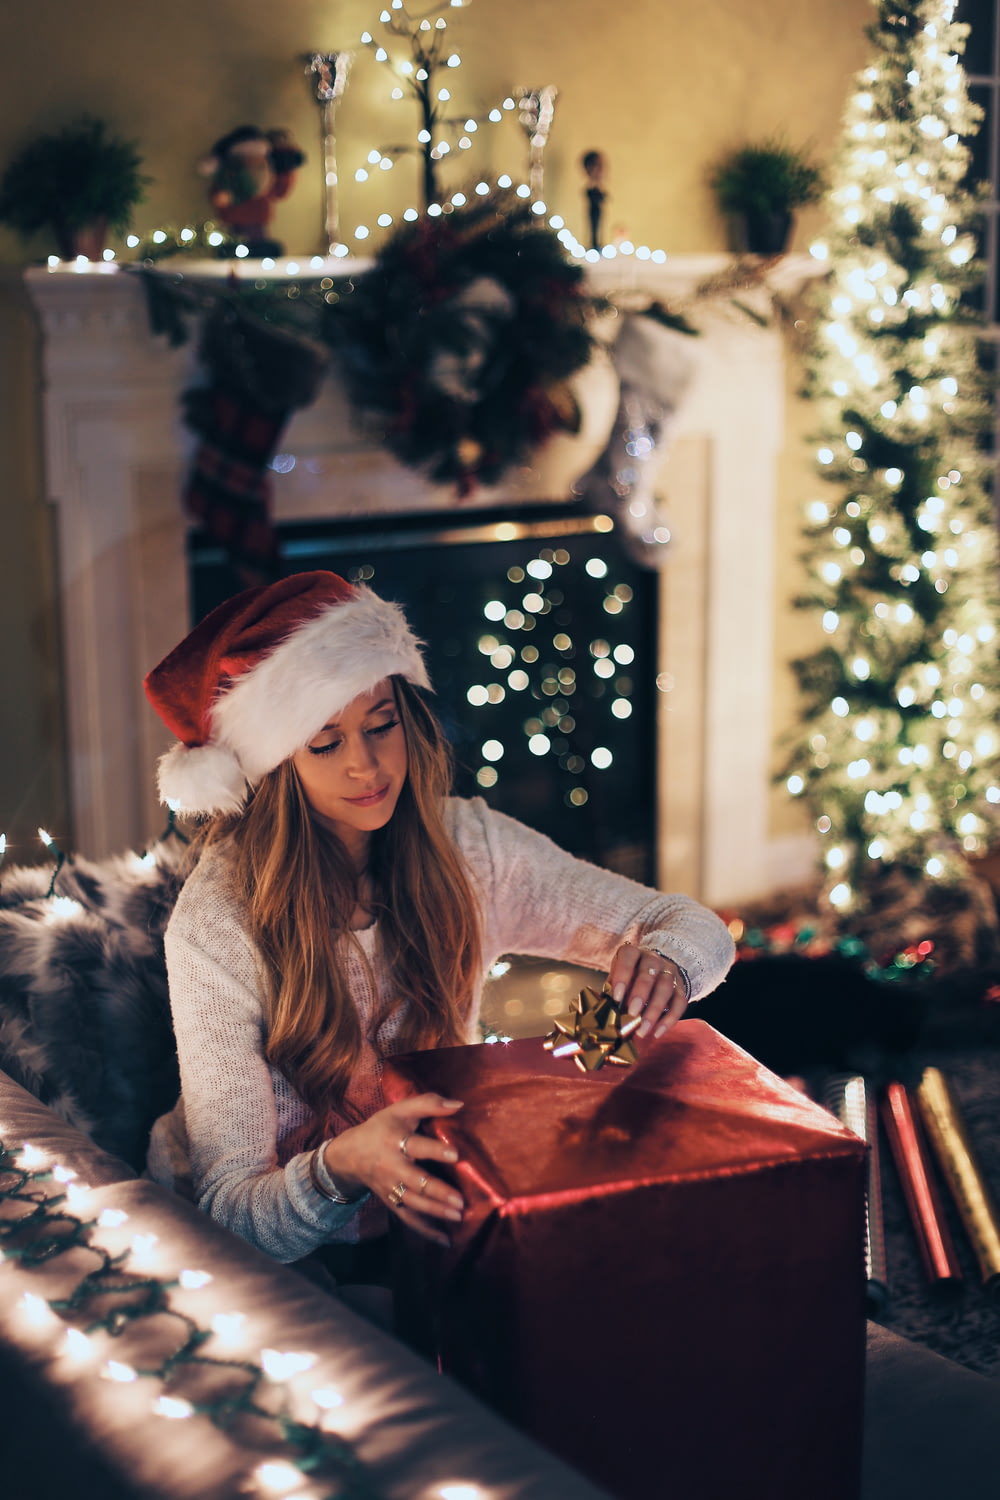 Frau legt Band in rote Geschenkbox in der Nähe des beleuchteten Weihnachtsbaums im Zimmer